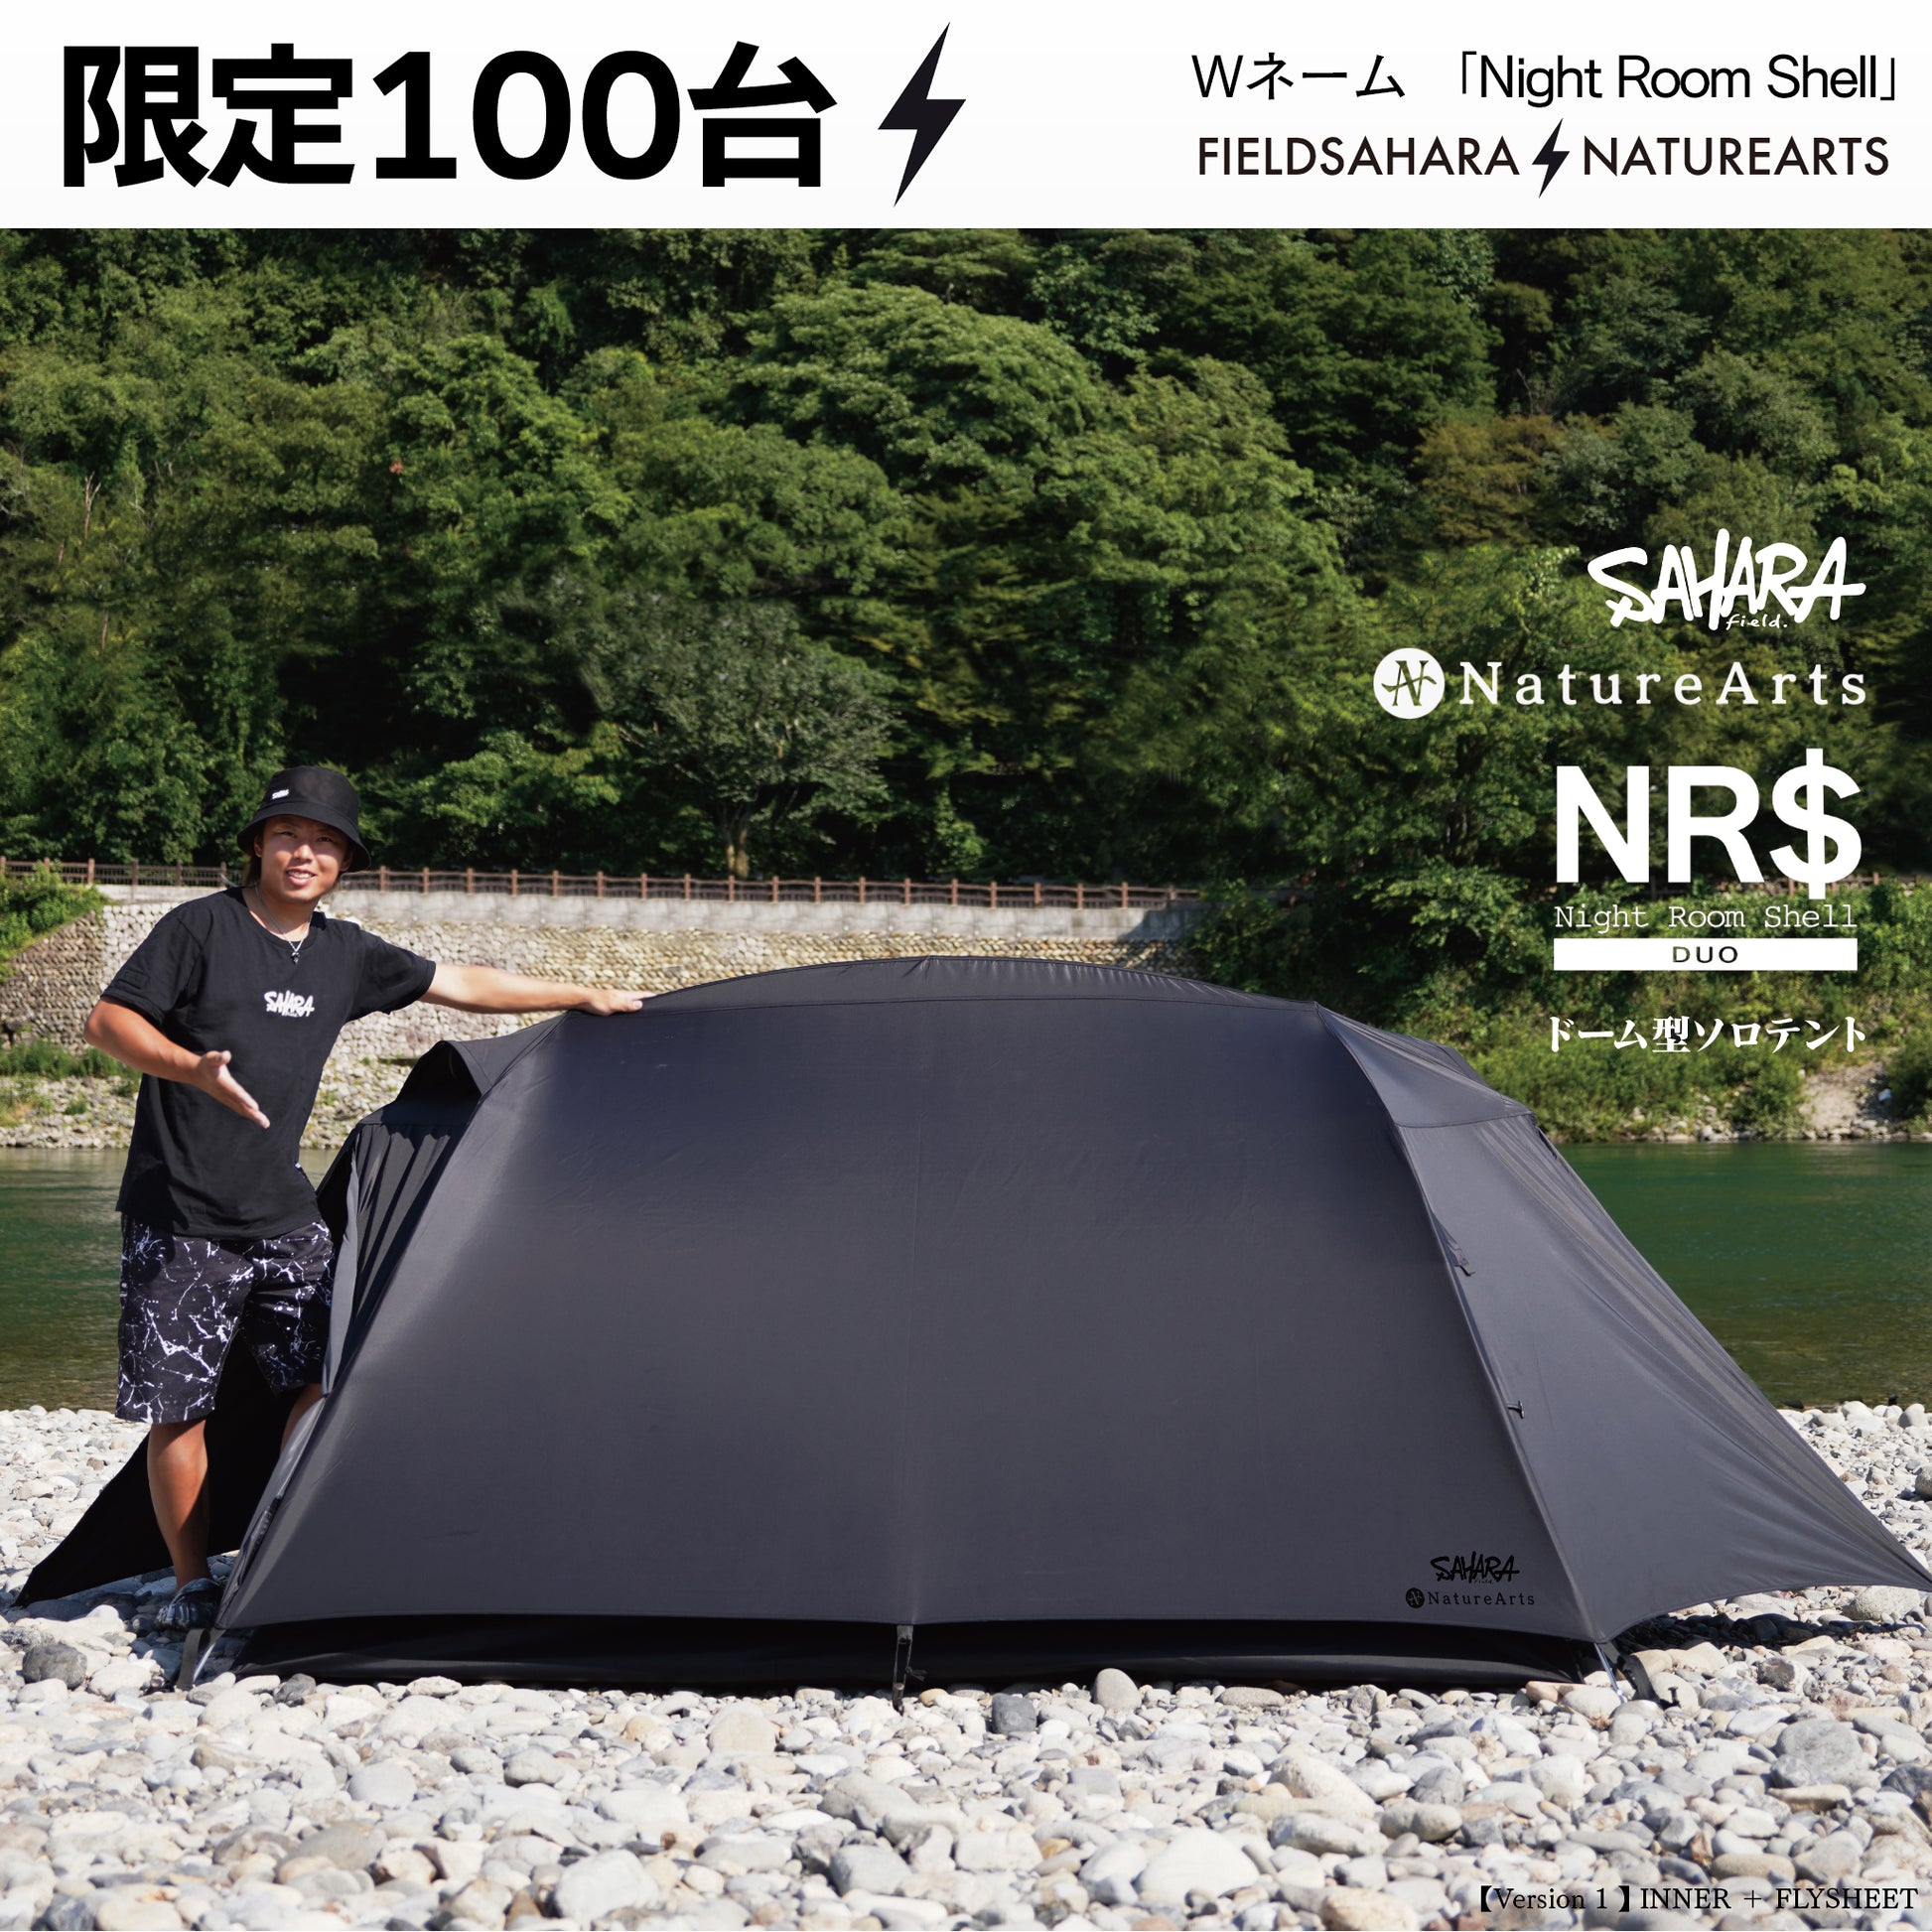 FieldSAHARA × NatureArts Night Room Shell Duoドーム型ソロテント 限定100台 受注販売 - FieldSAHARA